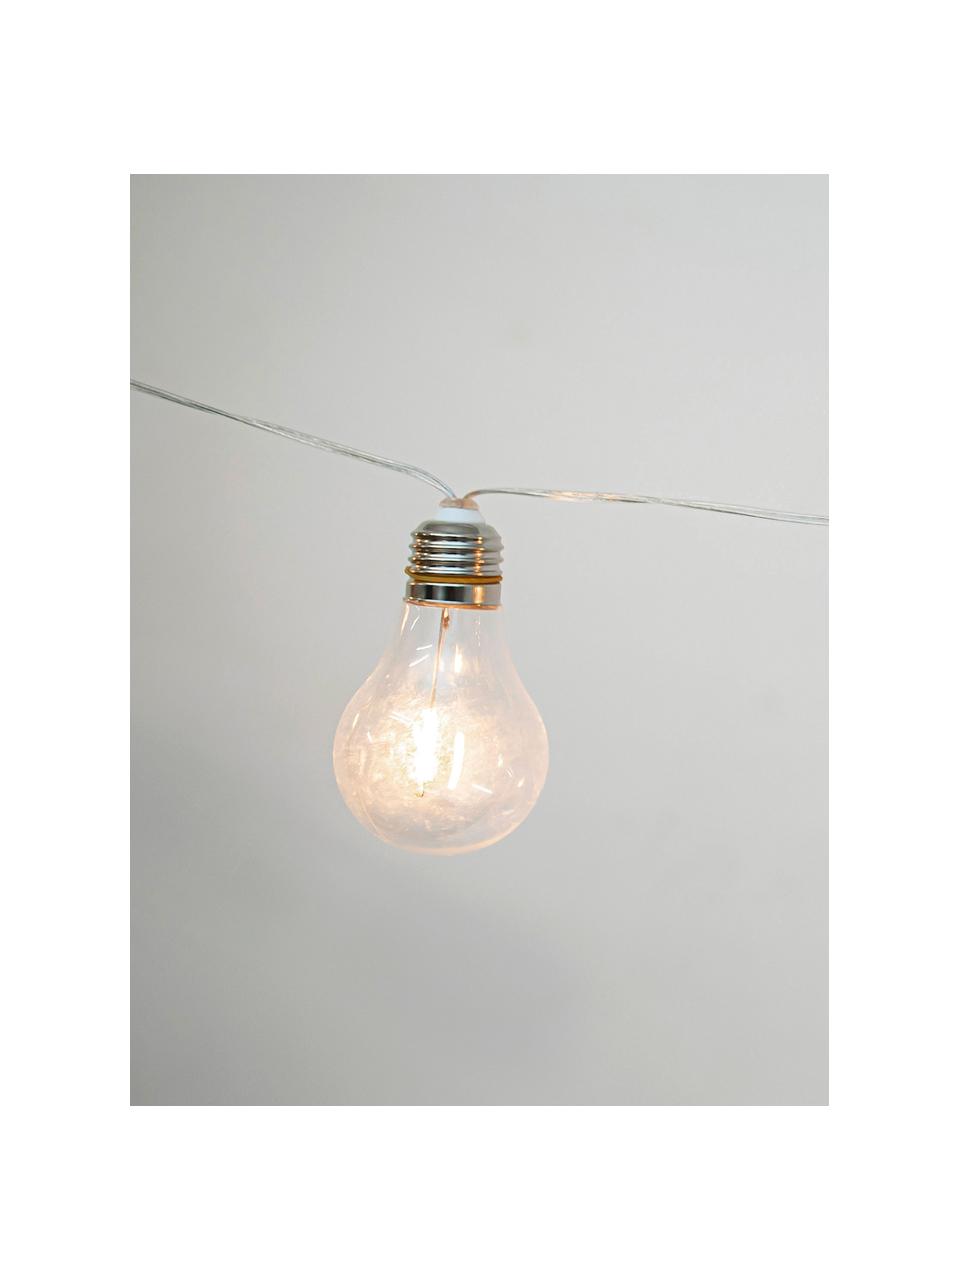 Venkovní světelný LED řetěz Stella, 450 cm, 10 lampionů, Transparentní, stříbrná, černá, D 450 cm